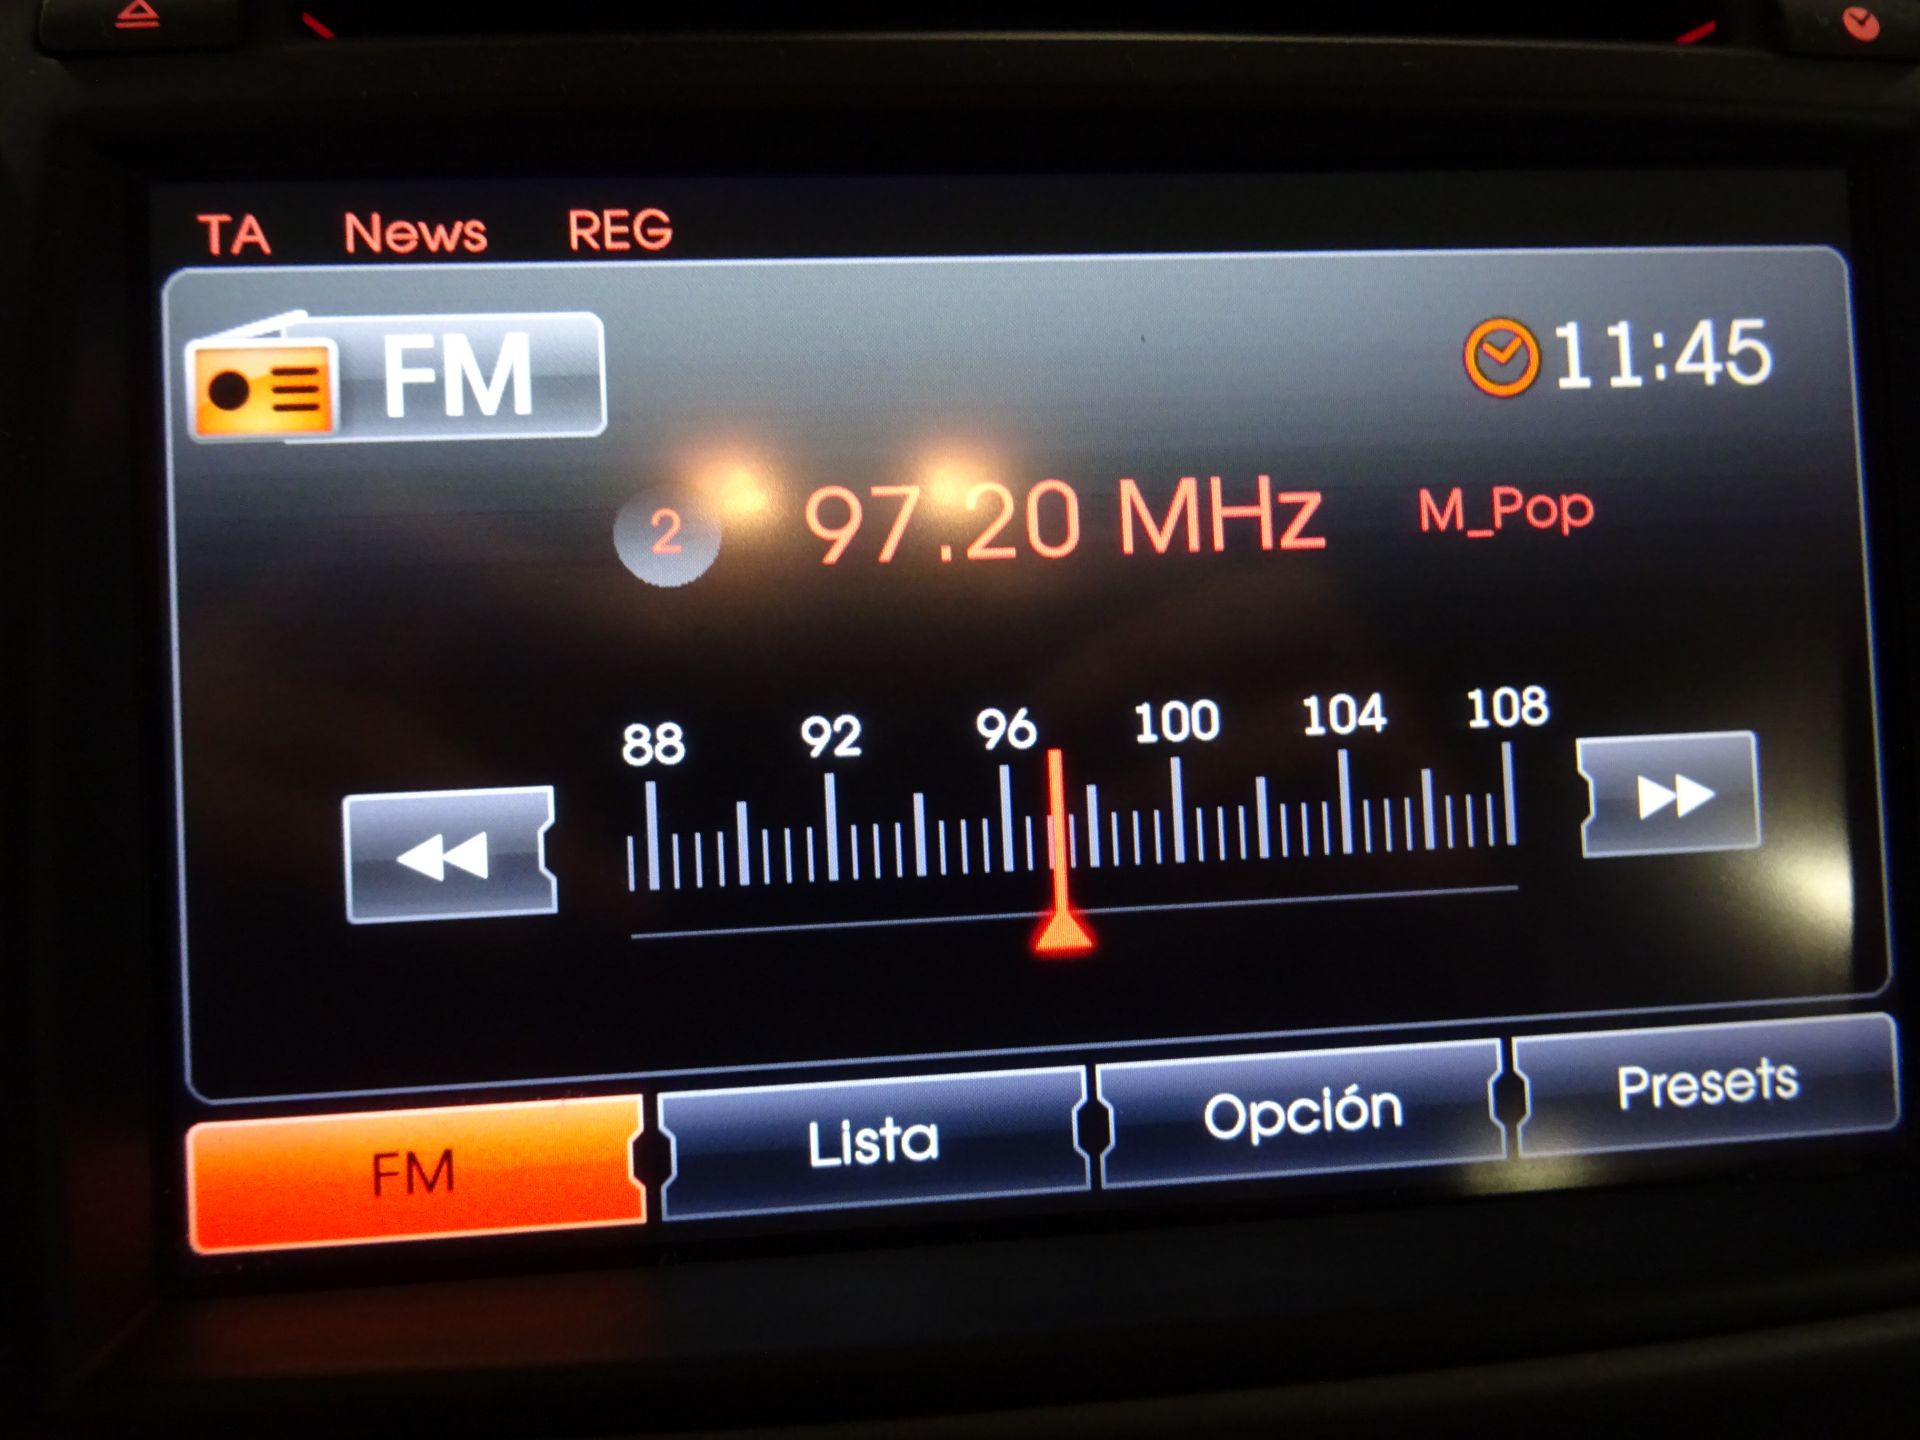 Kia Sportage 1.7 CRDI VGT 115CV Drive 4x2